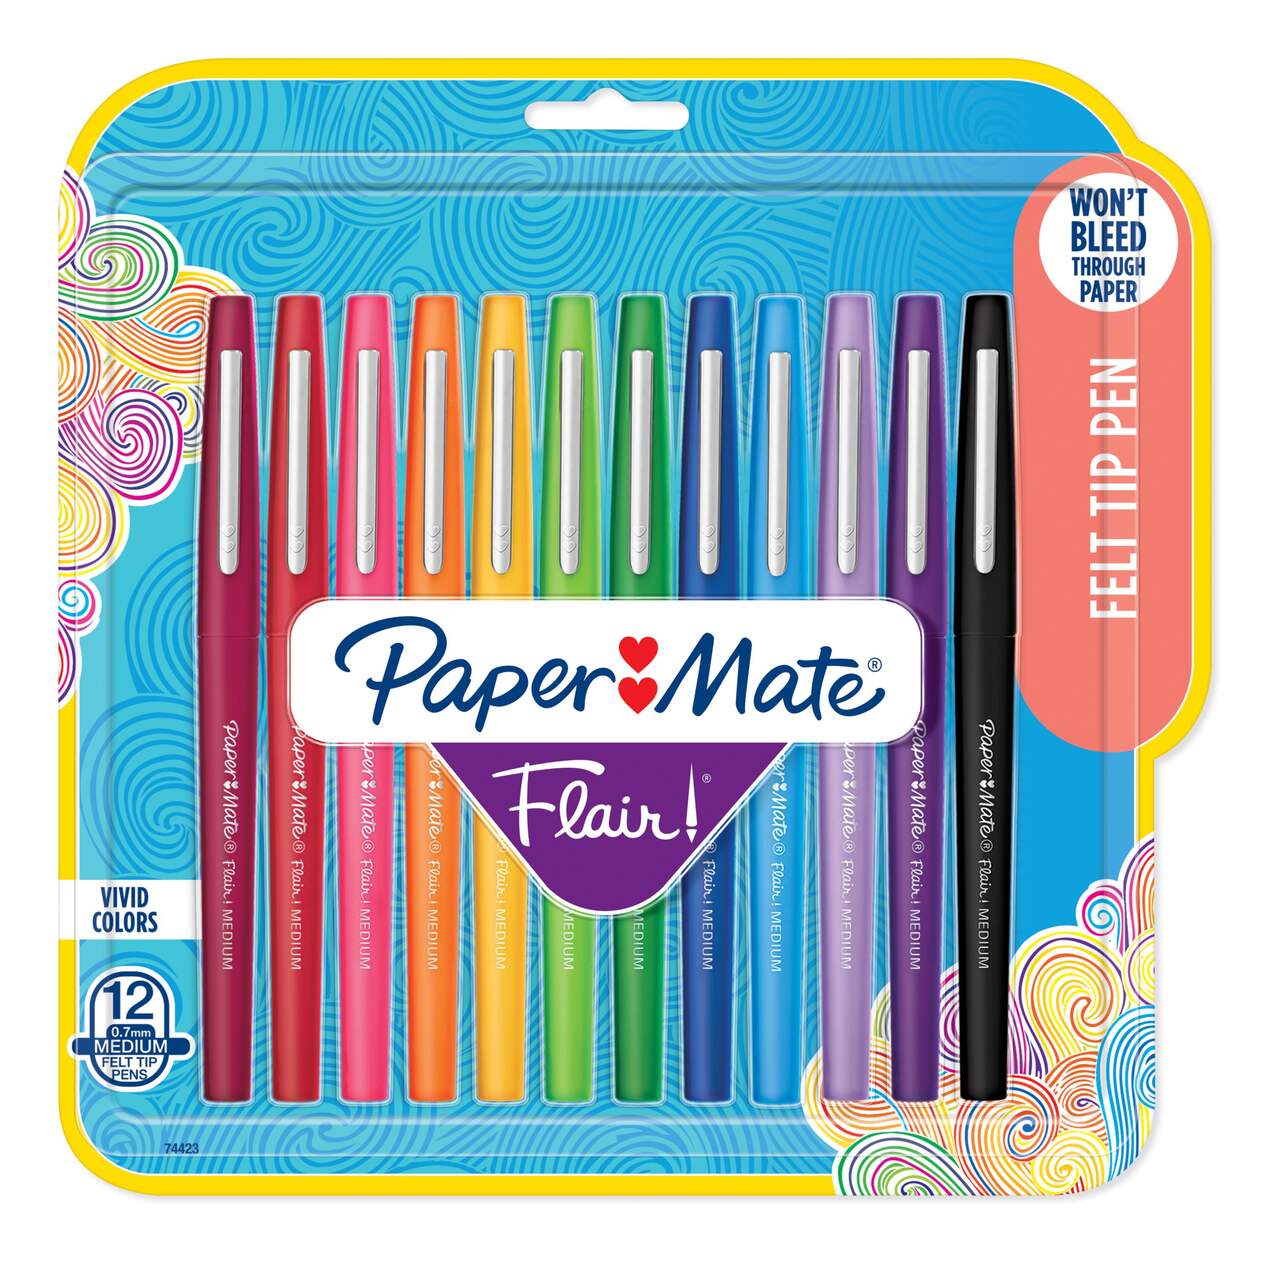 Merangue Silicone Full-Zip Pencil Case, Assorted Colours